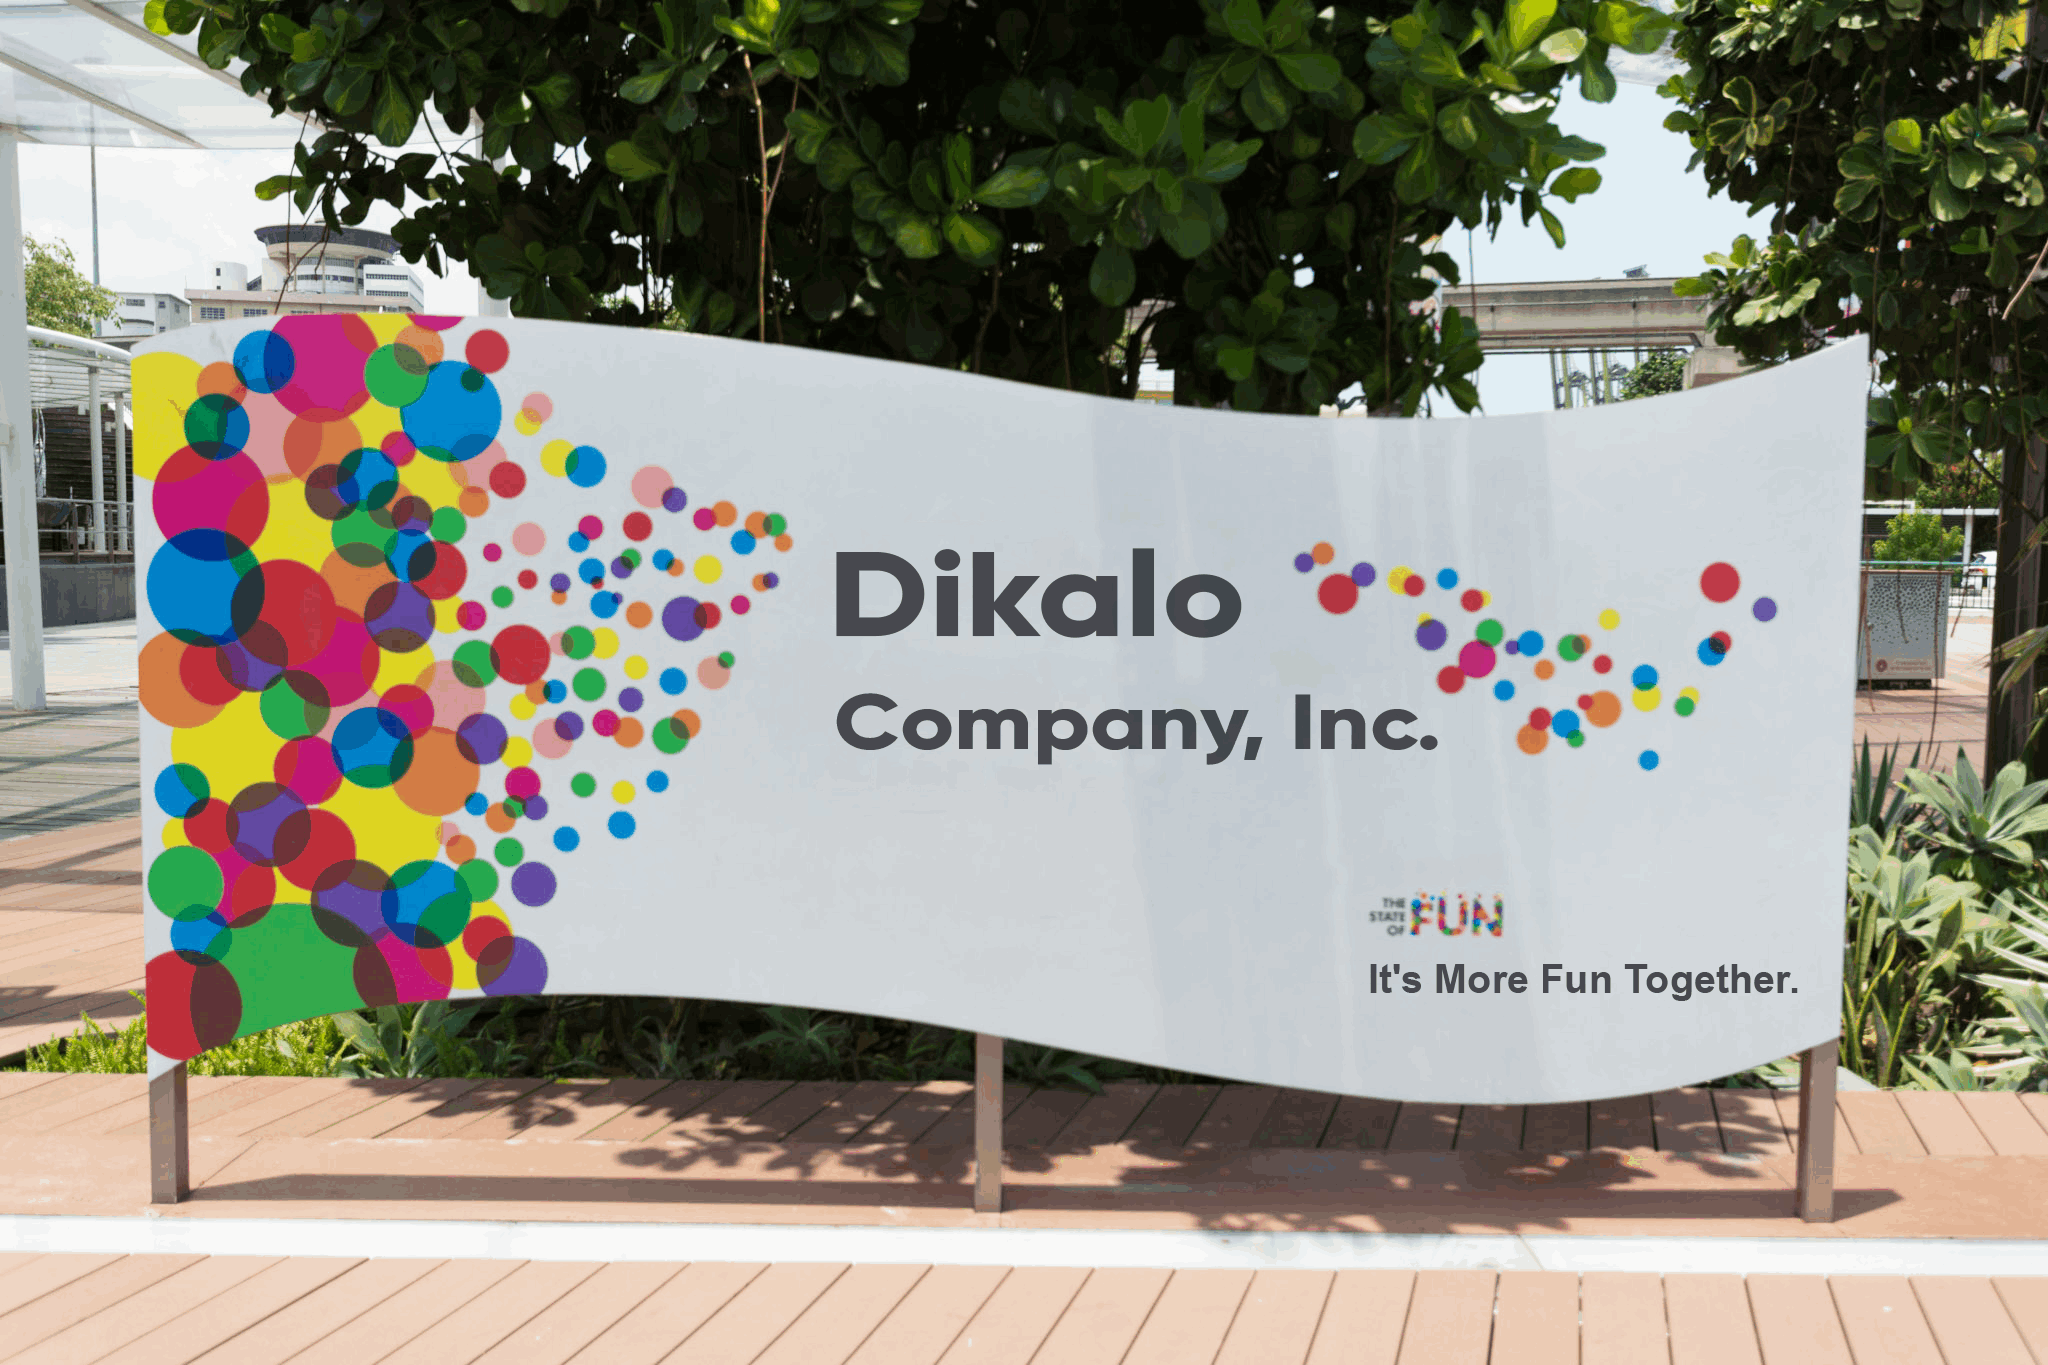 Dikalo Company